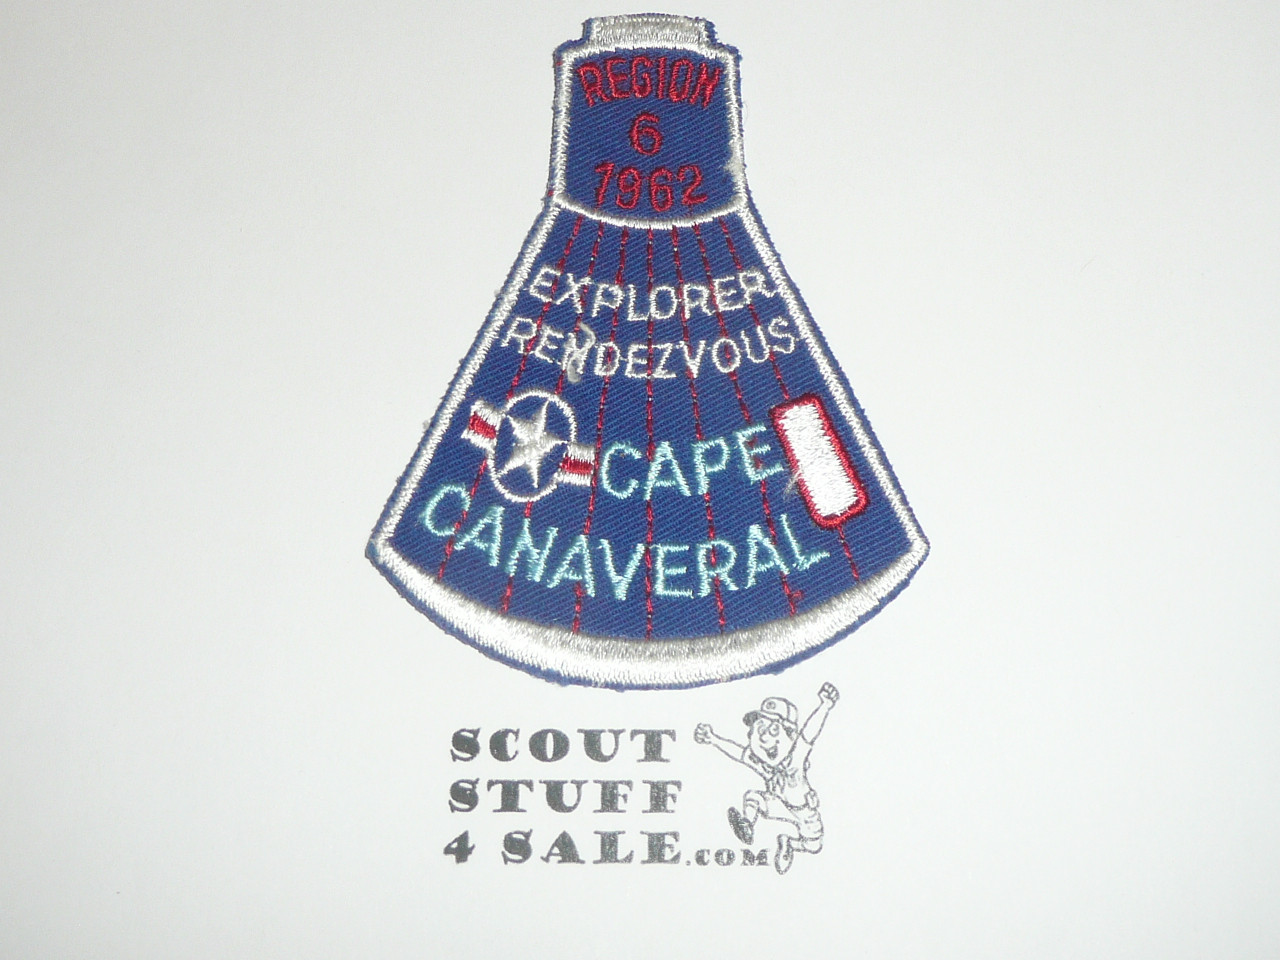 Region 6 1962 Explorer Rendezvous Patch - Boy Scout